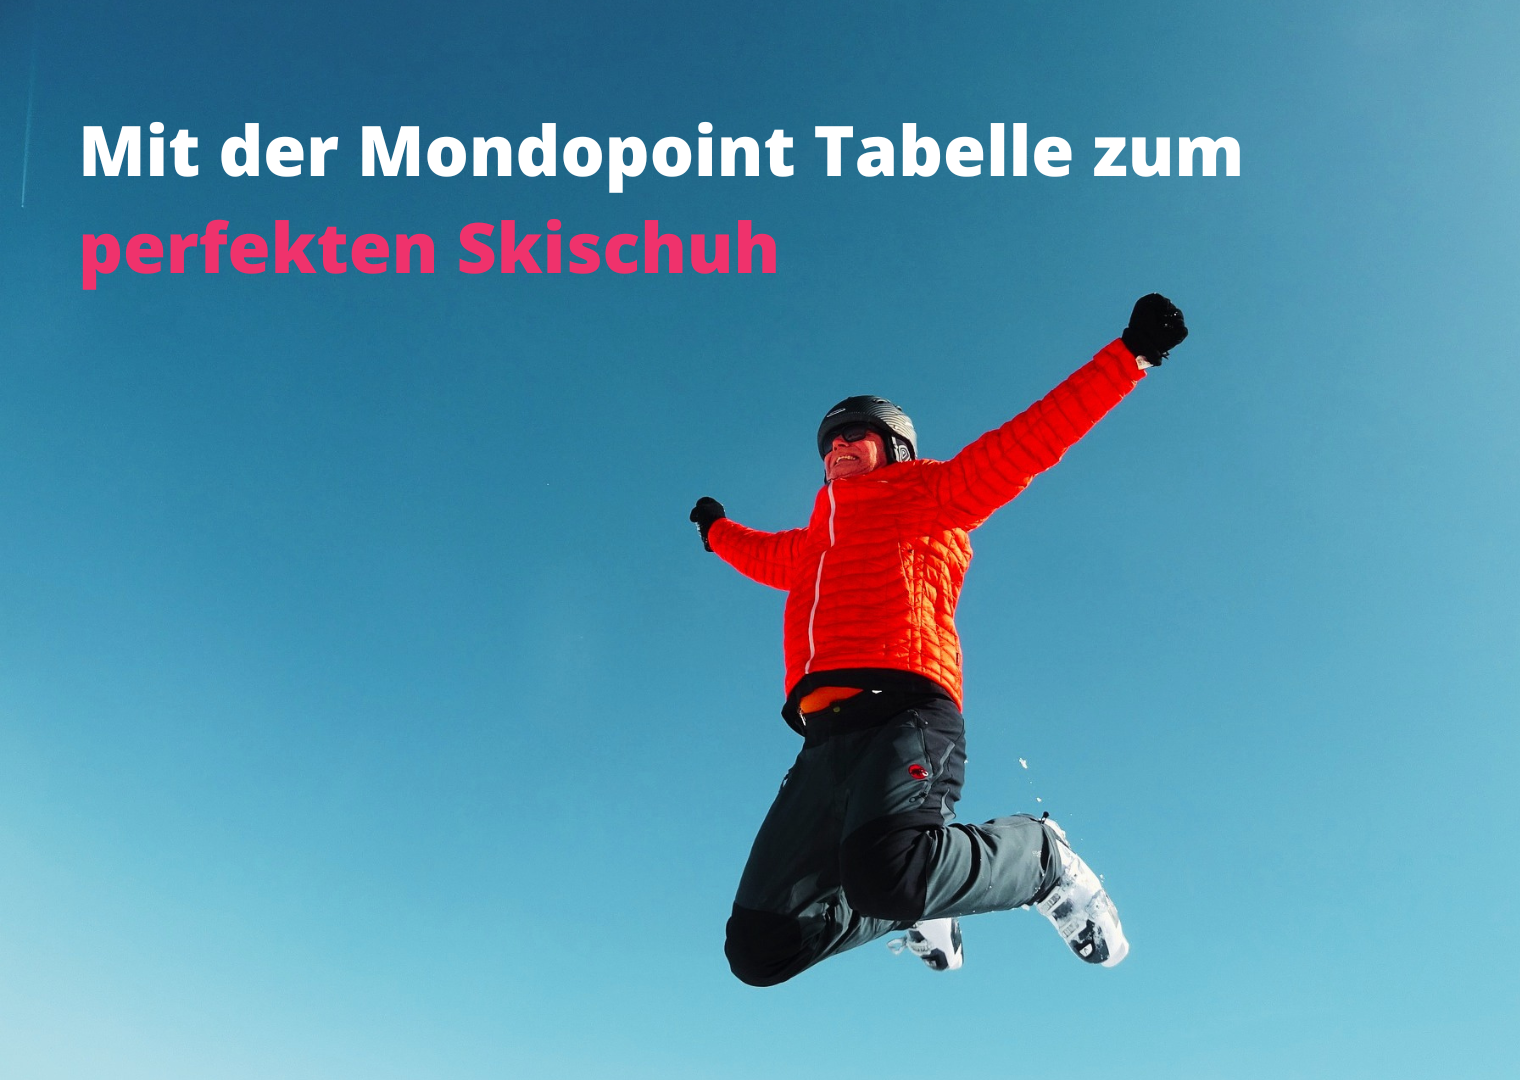 Skischuh-Mondopoint-Titelbild